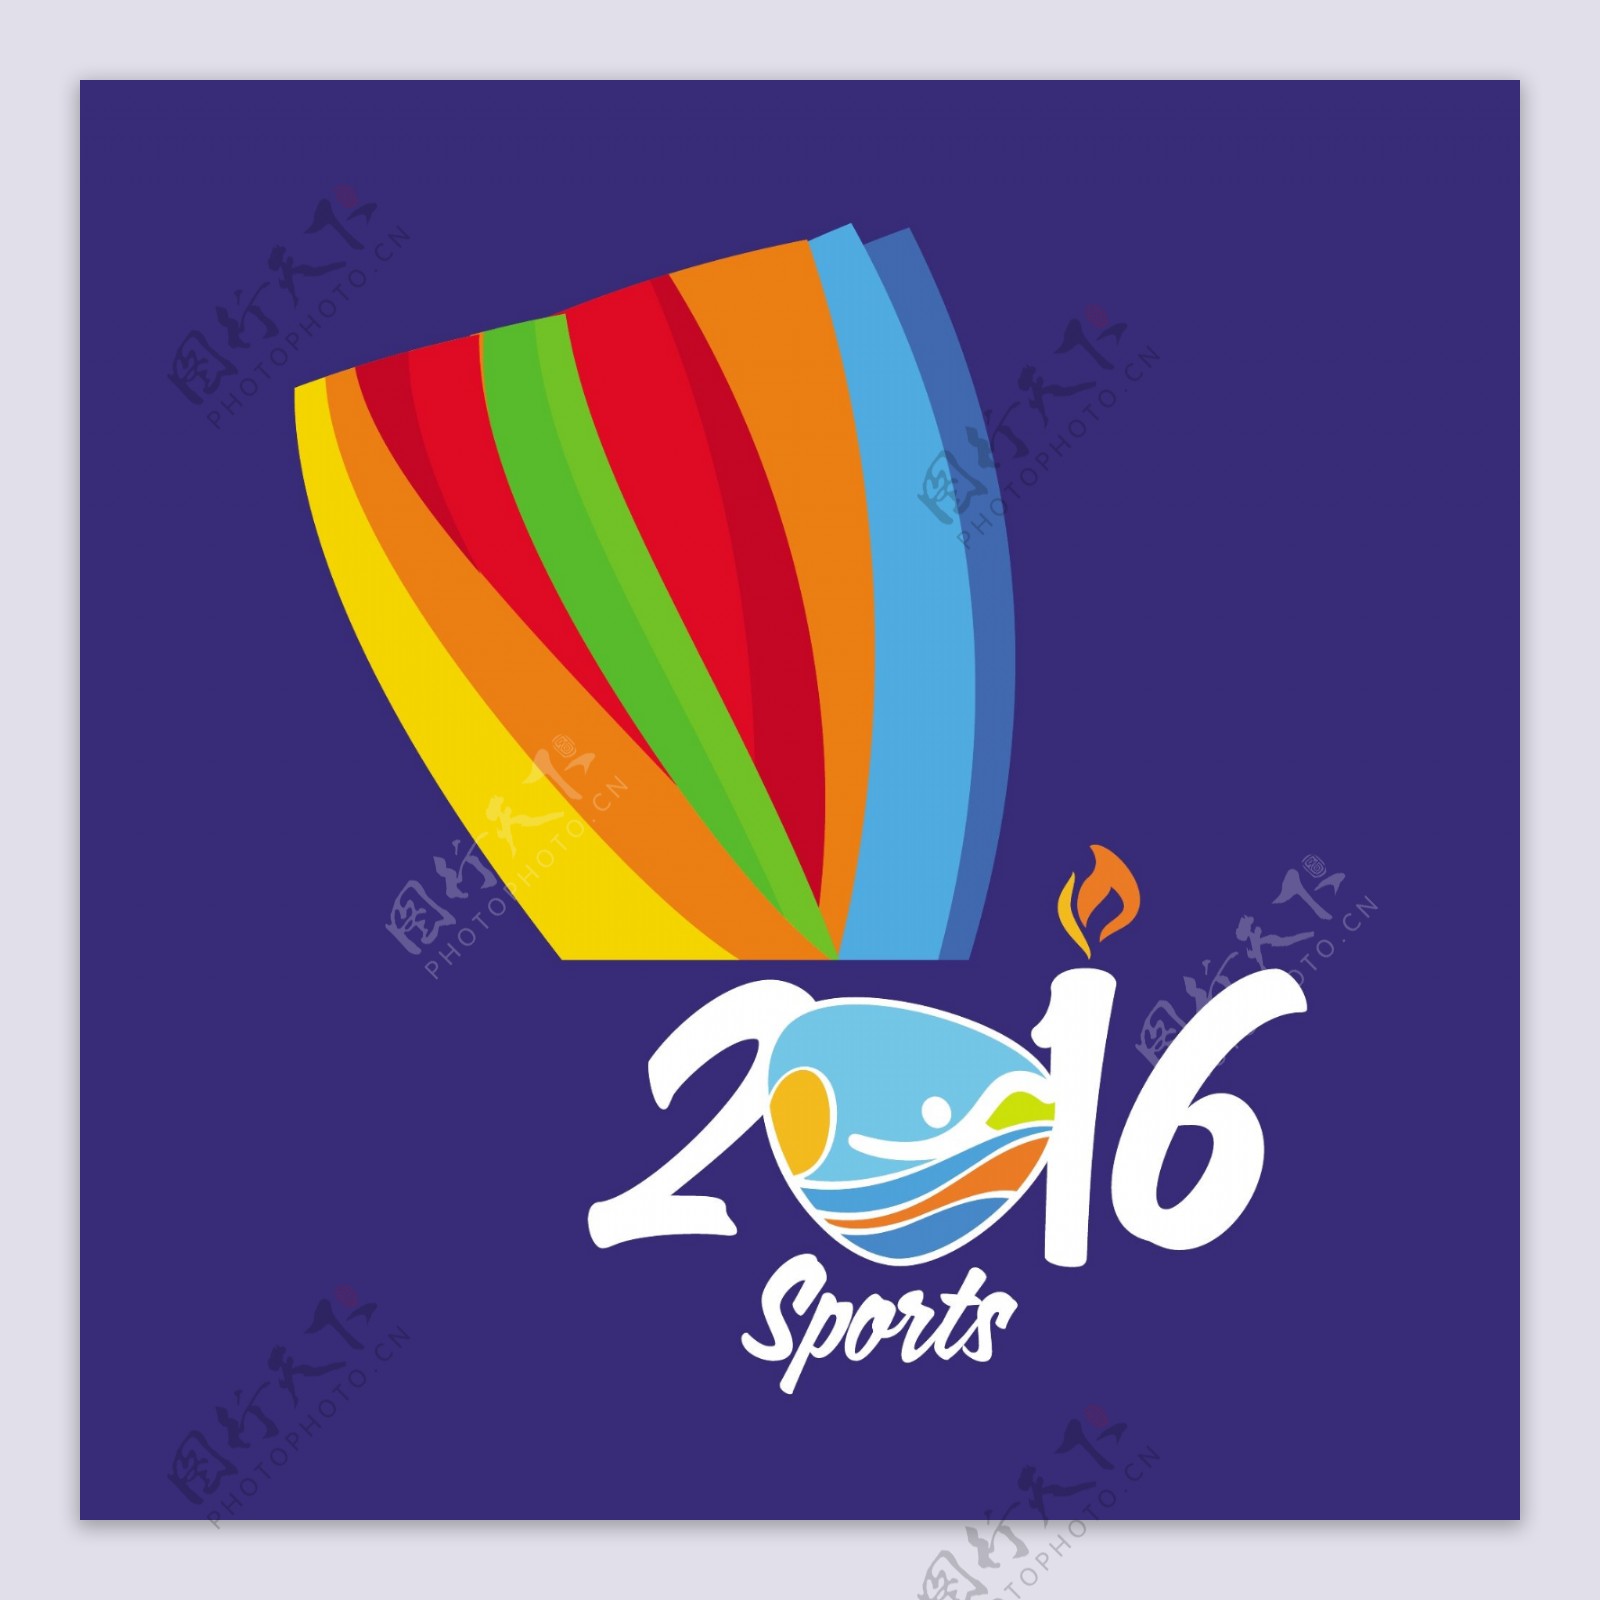 里约2016大体育背景